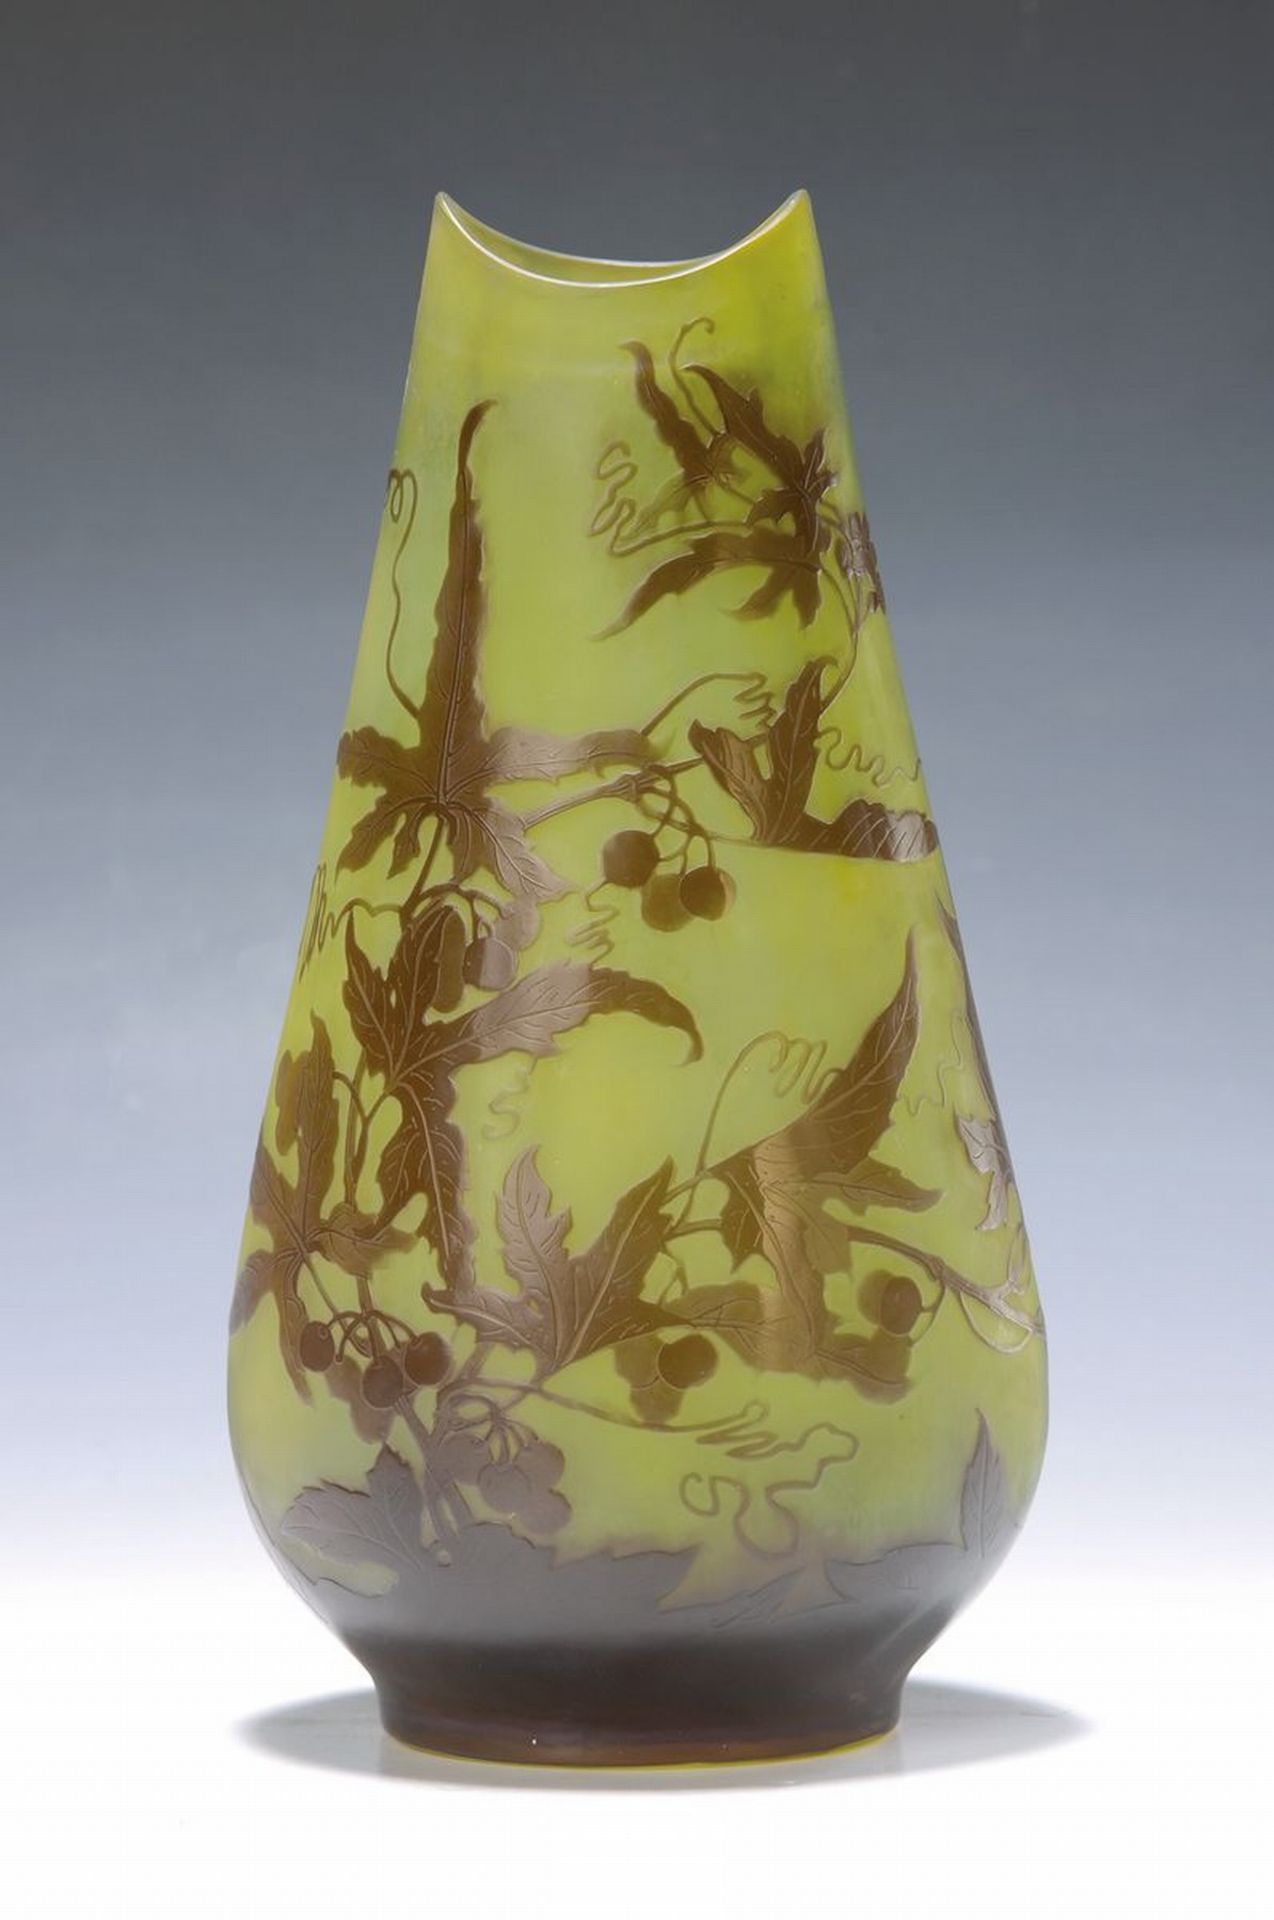 Große Jugendstilvase, Gallé, um 1914/15,  farbloses Glas,